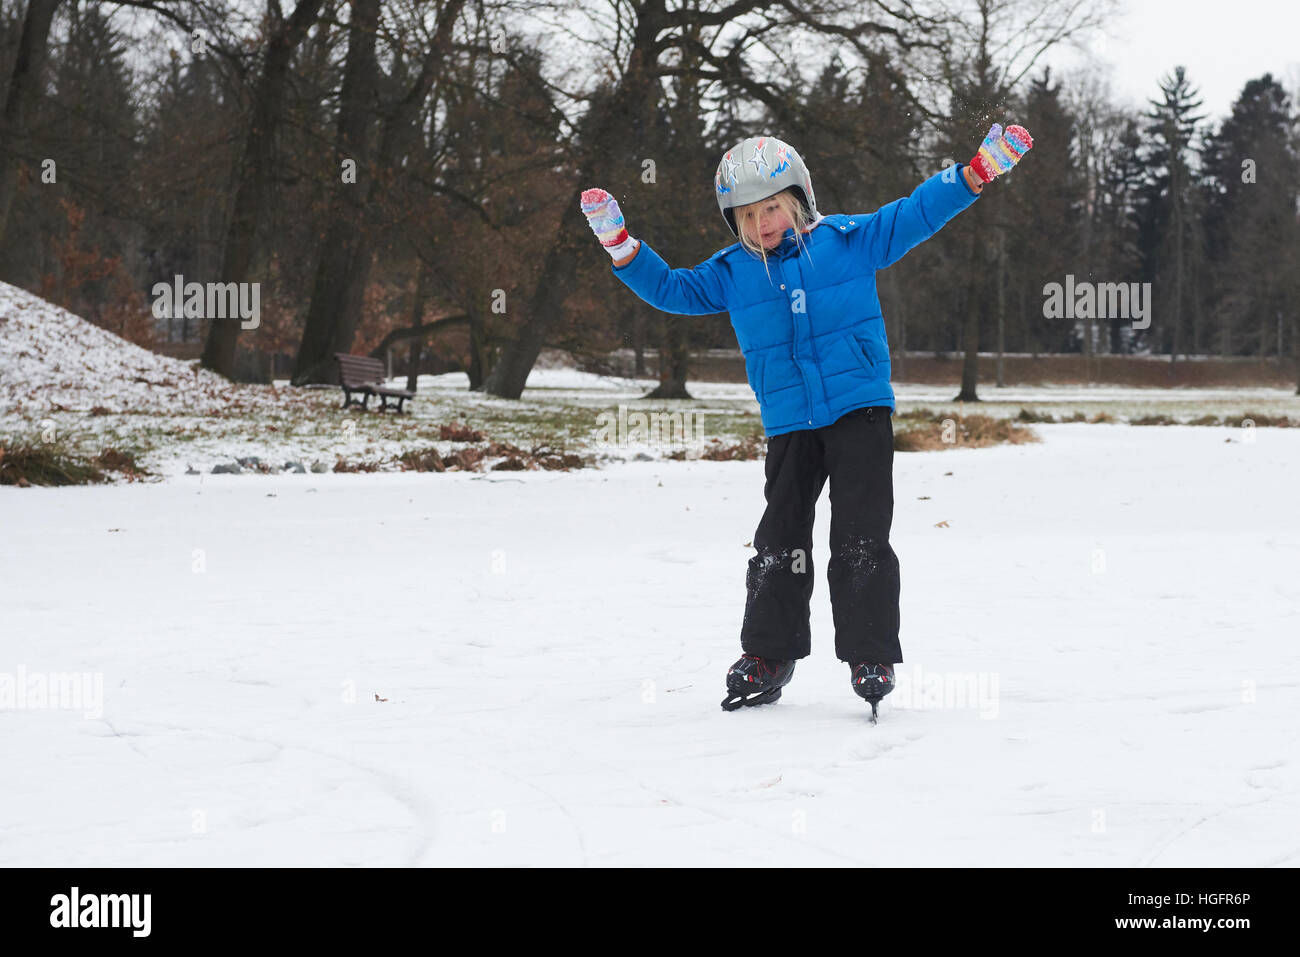 Adorabile bambina ragazza il pattinaggio su ghiaccio in inverno la neve giorno all'aperto nel parco sul laghetto congelato. Indossando il casco di sicurezza Foto Stock